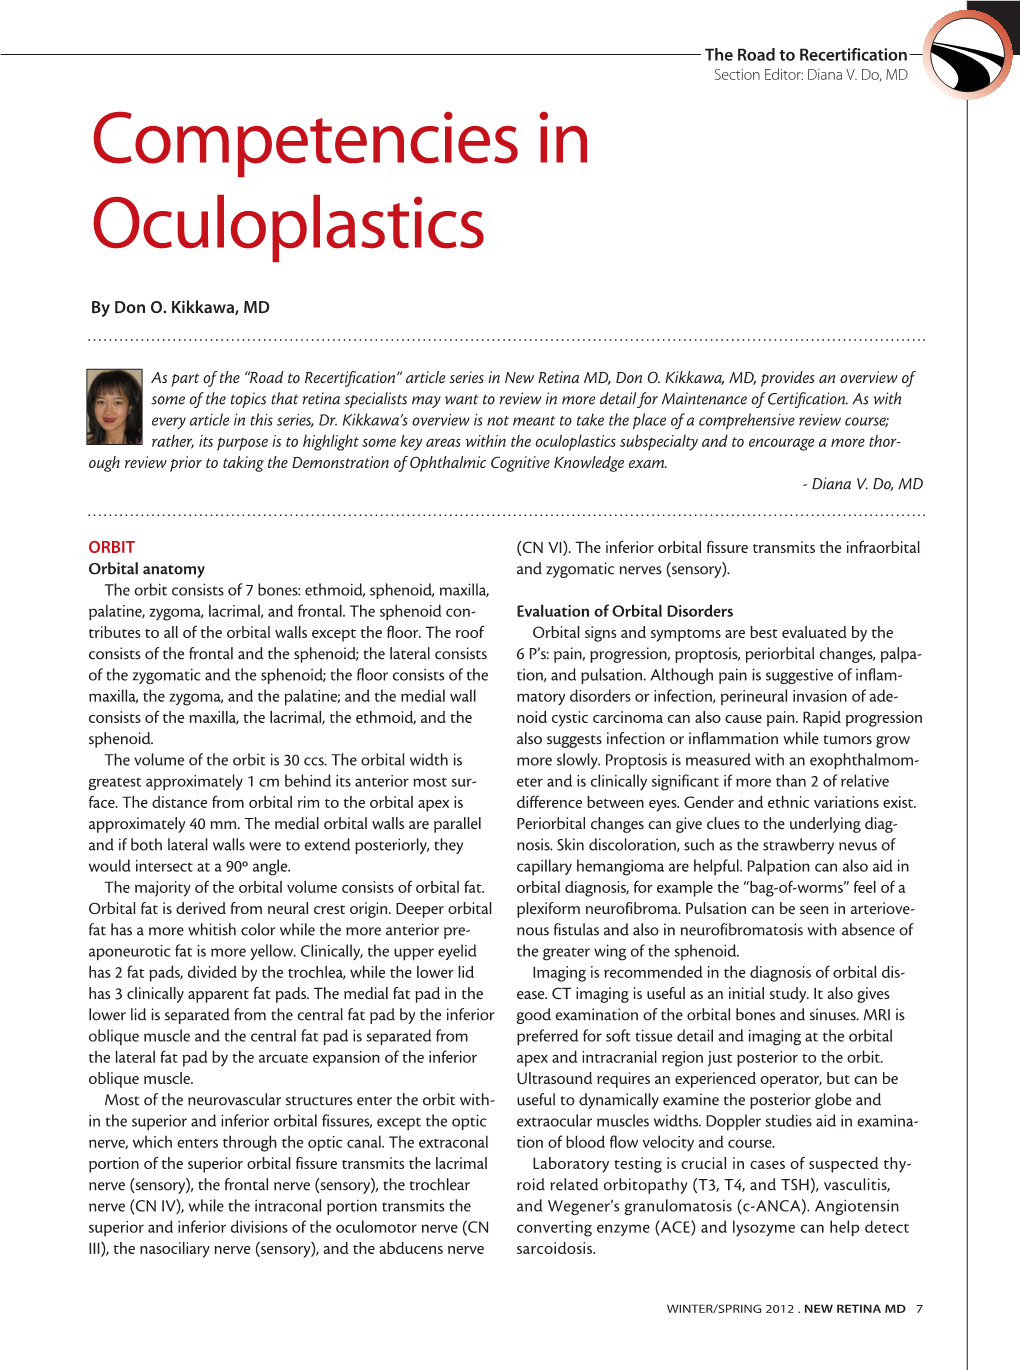 Competencies in Oculoplastics